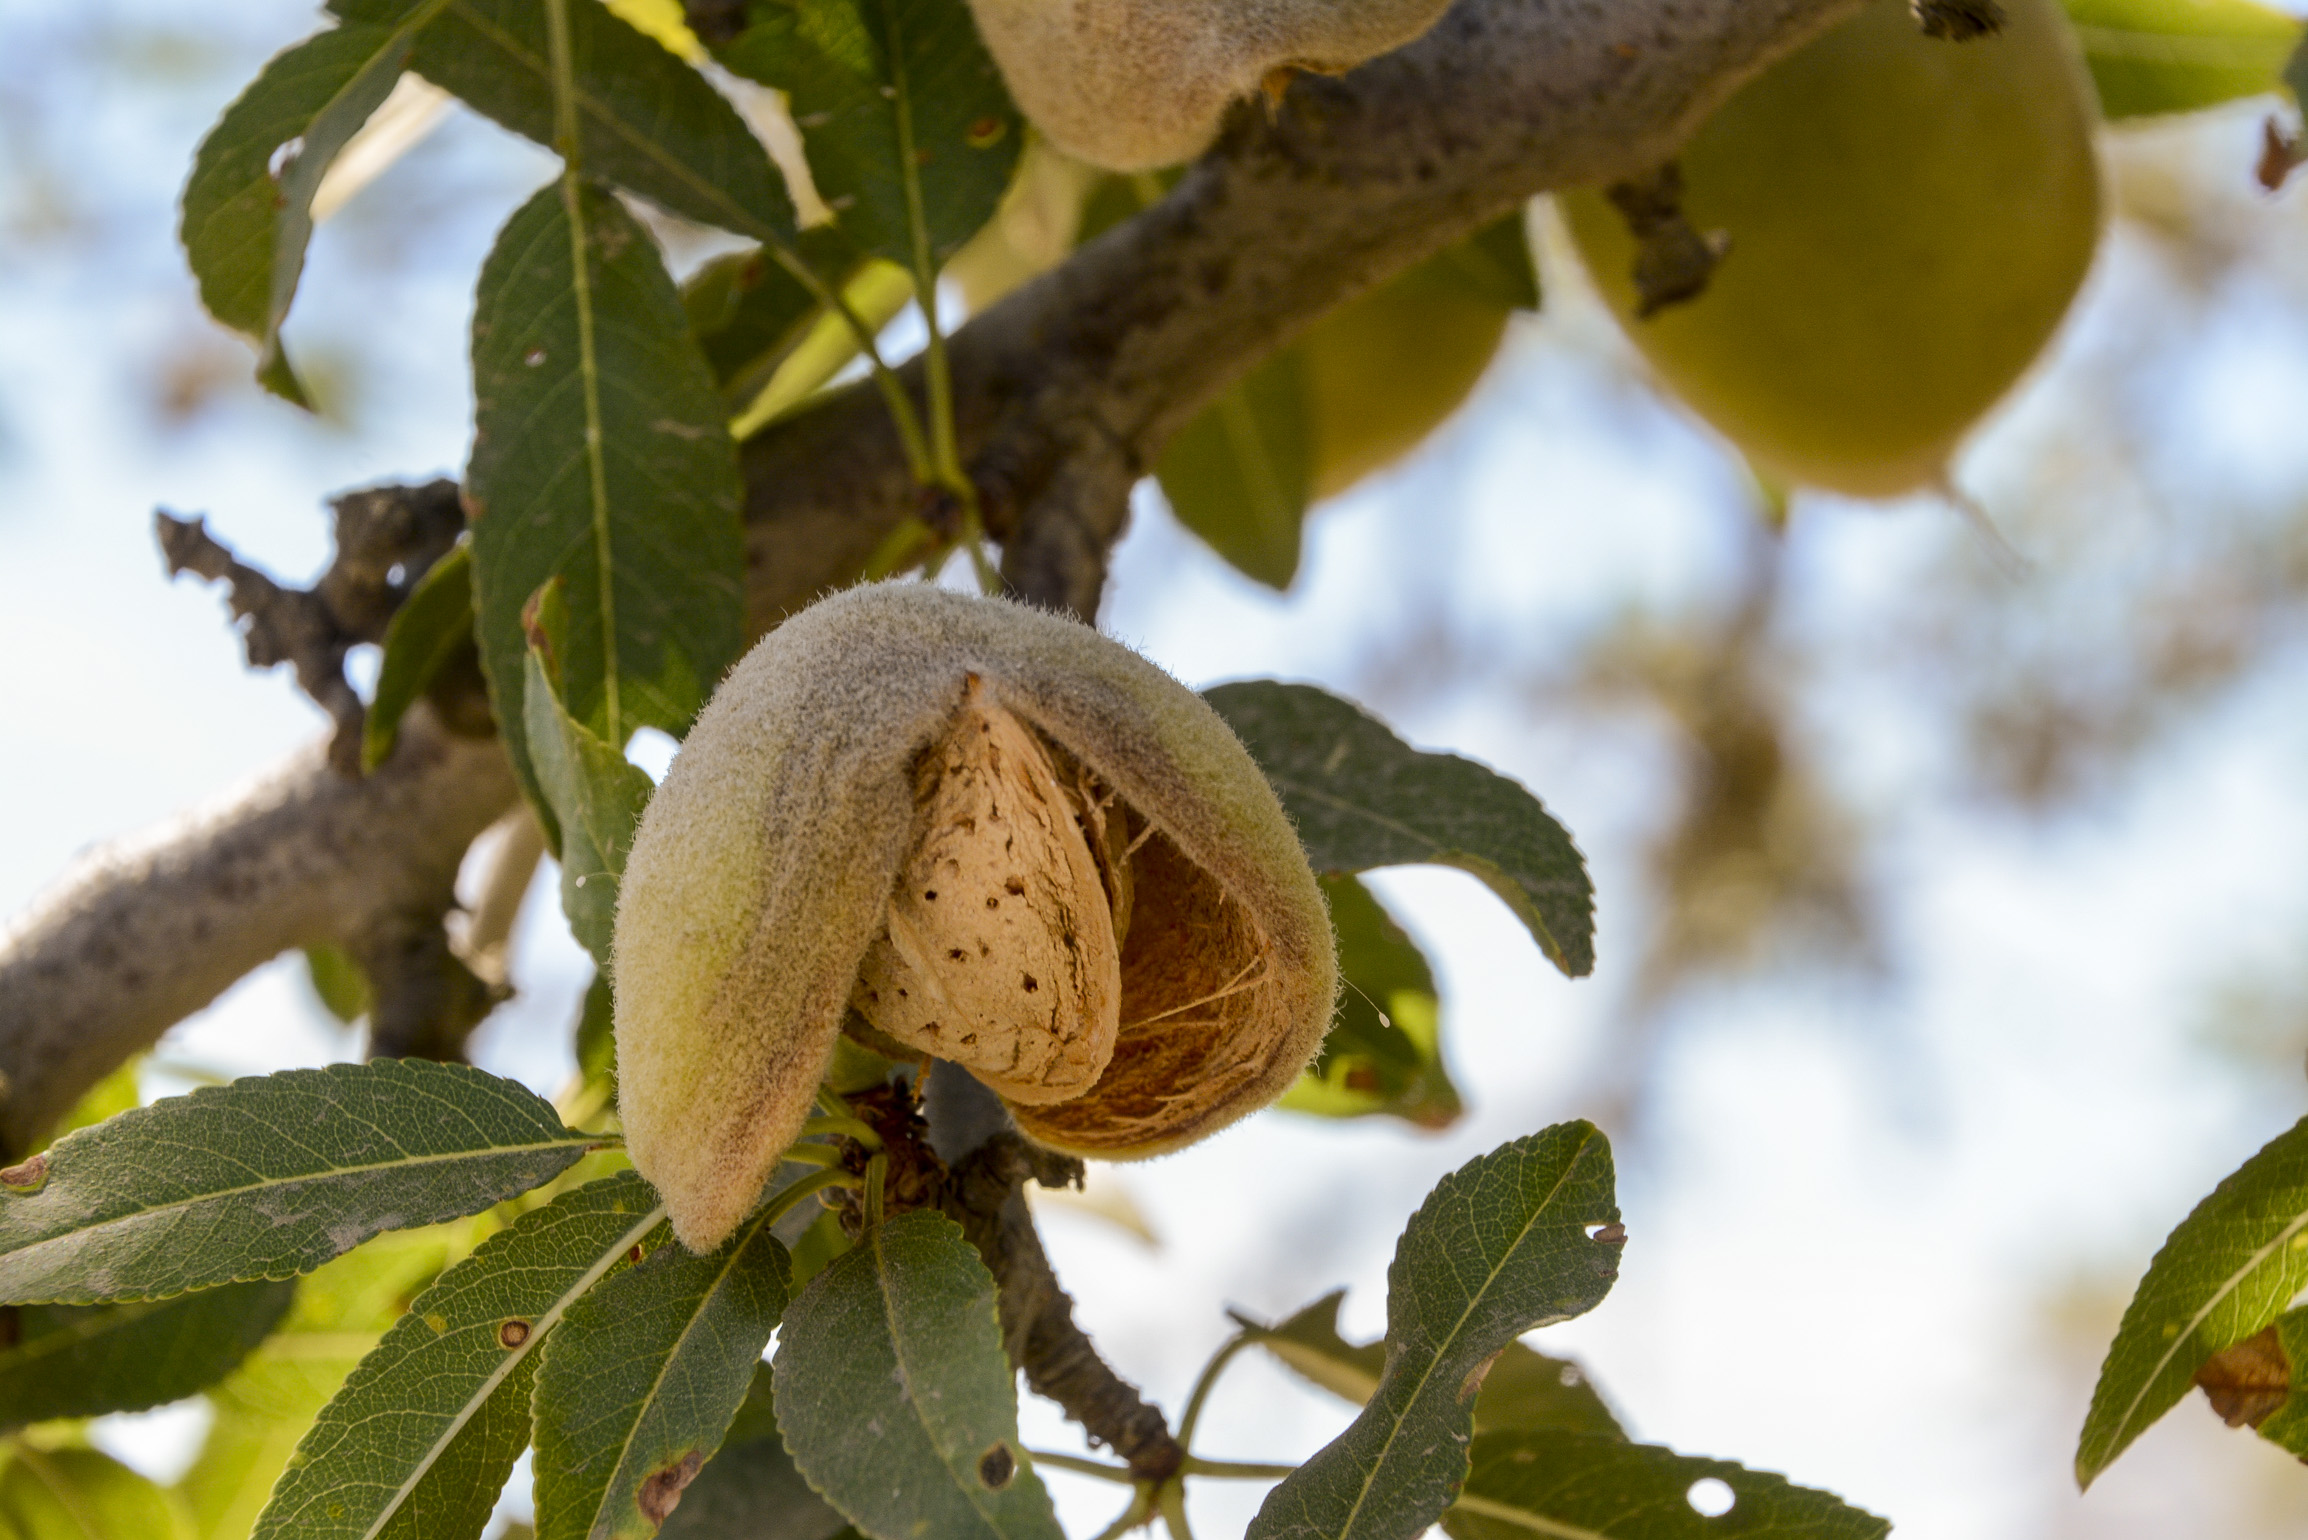 Tree Nut